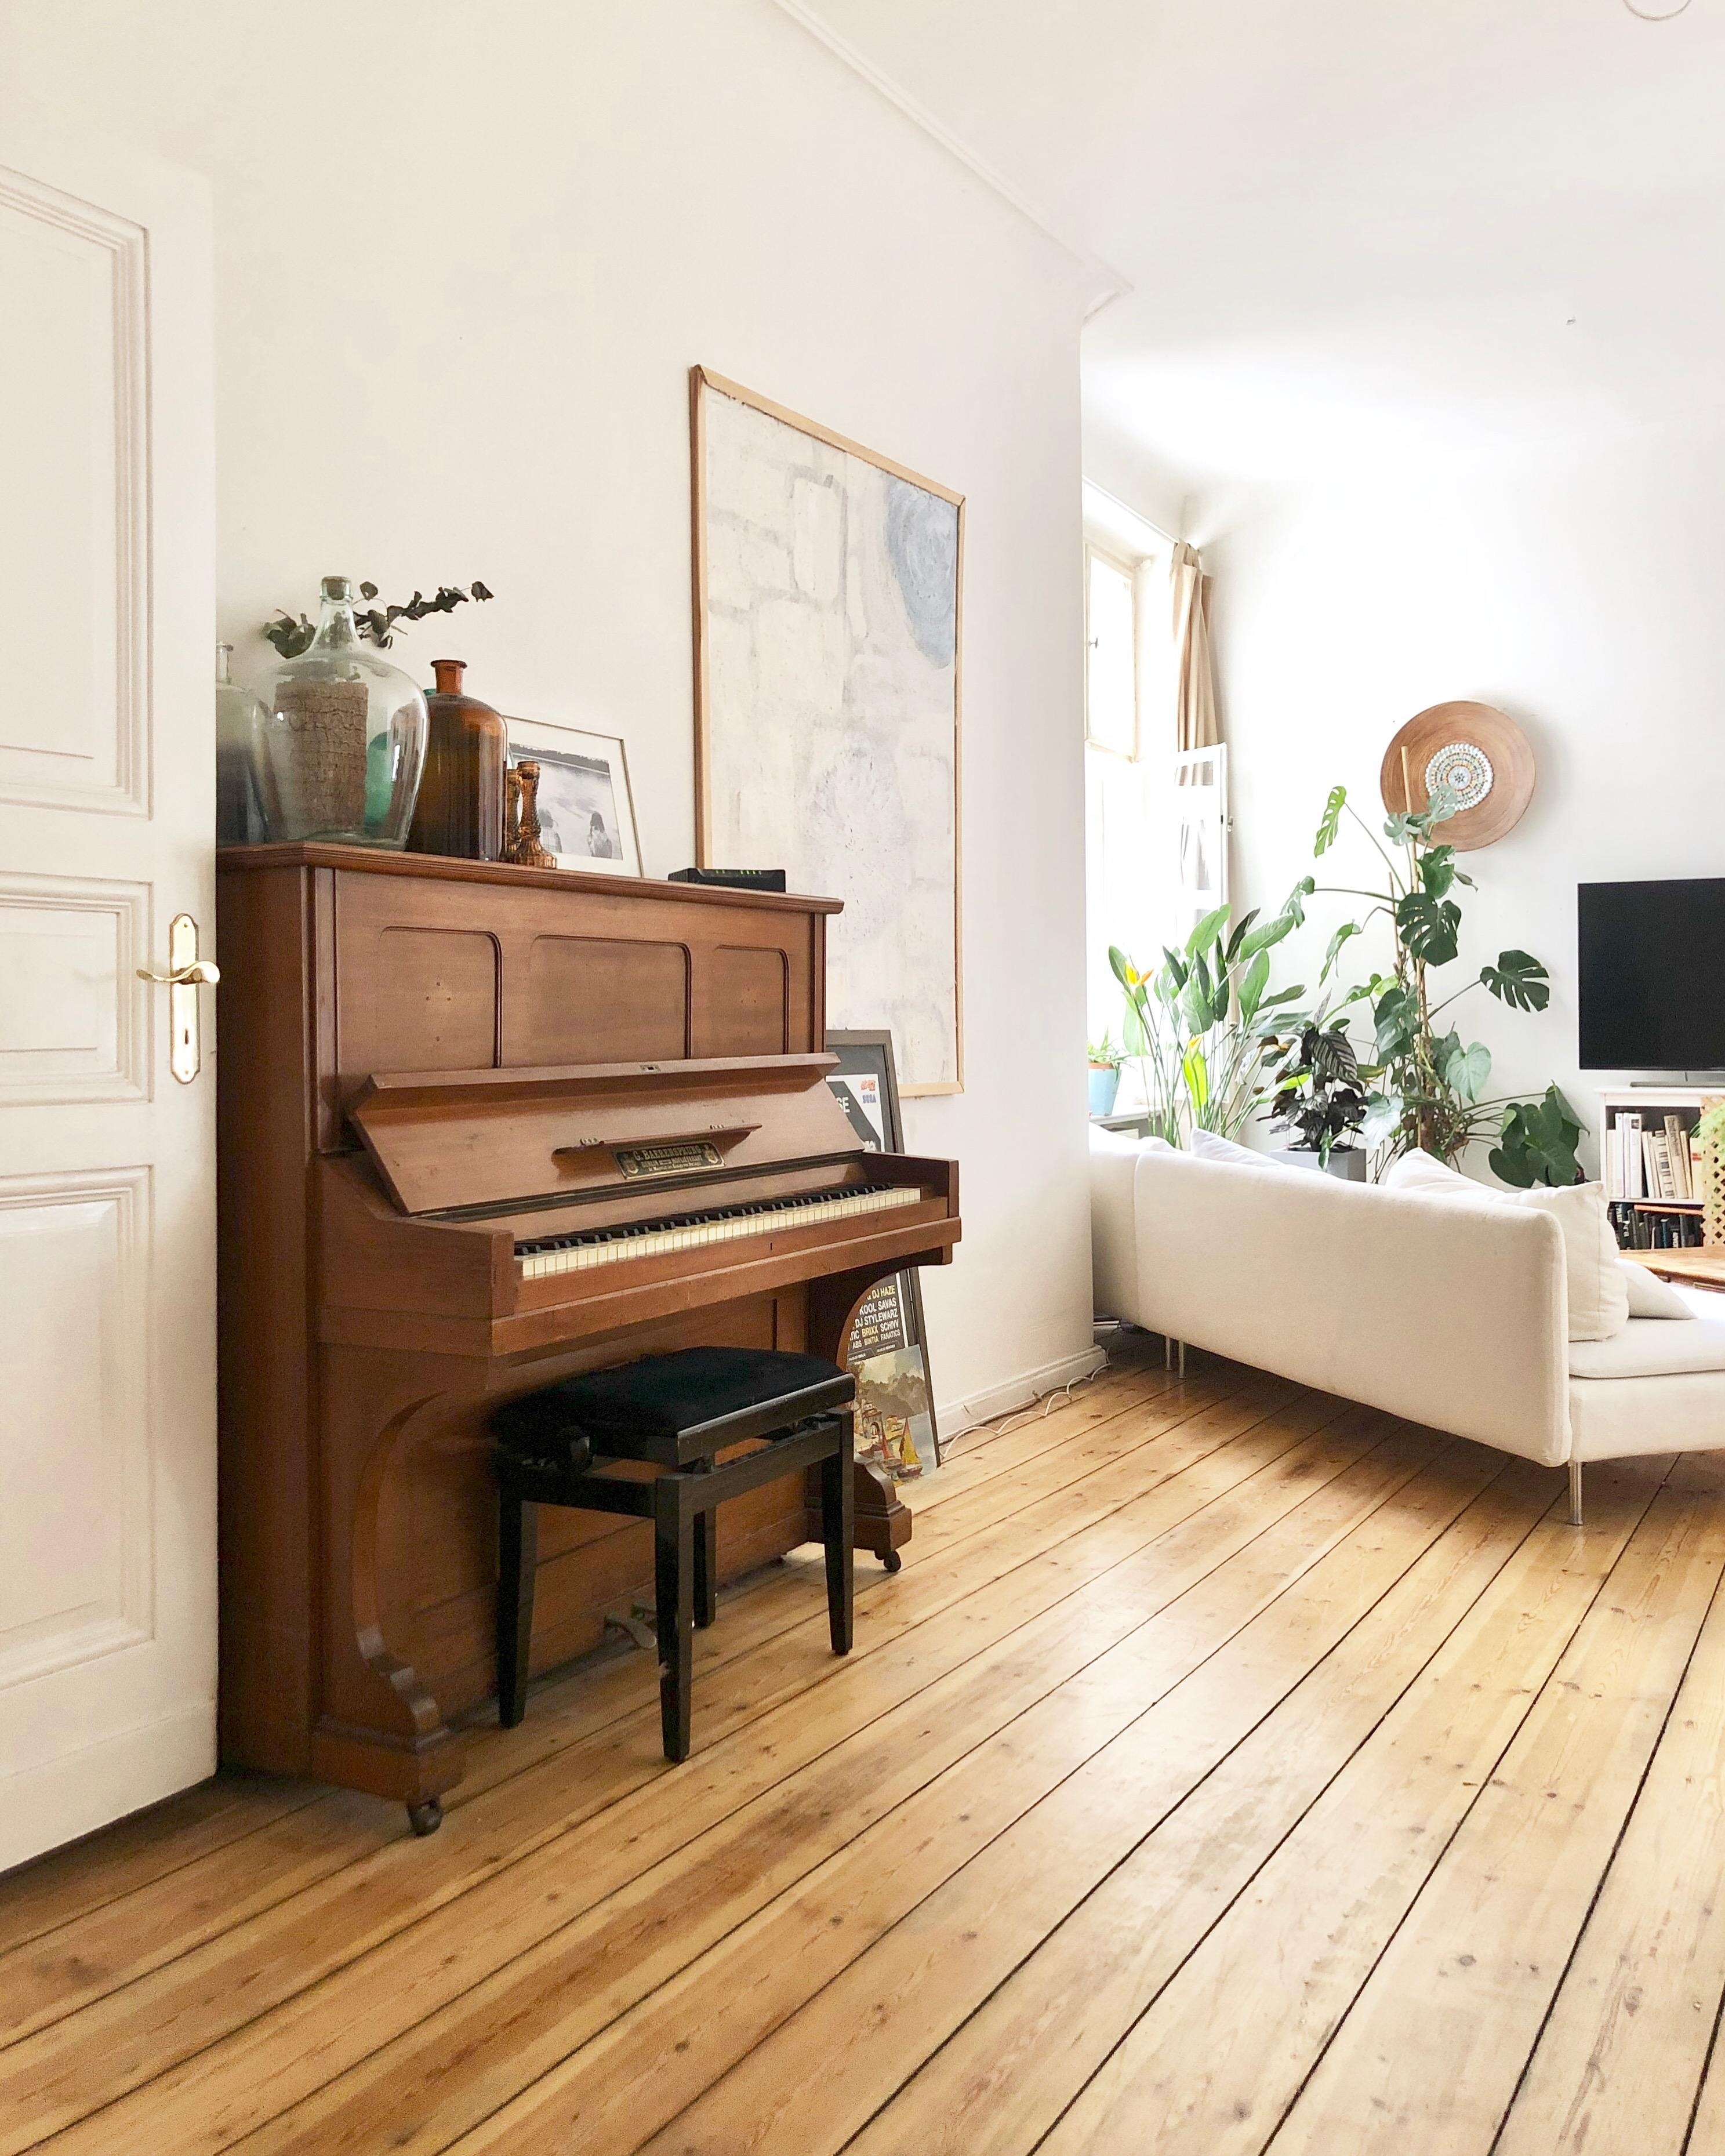 Heute gibt es mal einen neuen Blickwinkel für Euch! Und ab raus in die Sonne! ☀️ #altbau #berlin #wohnzimmer #klavier